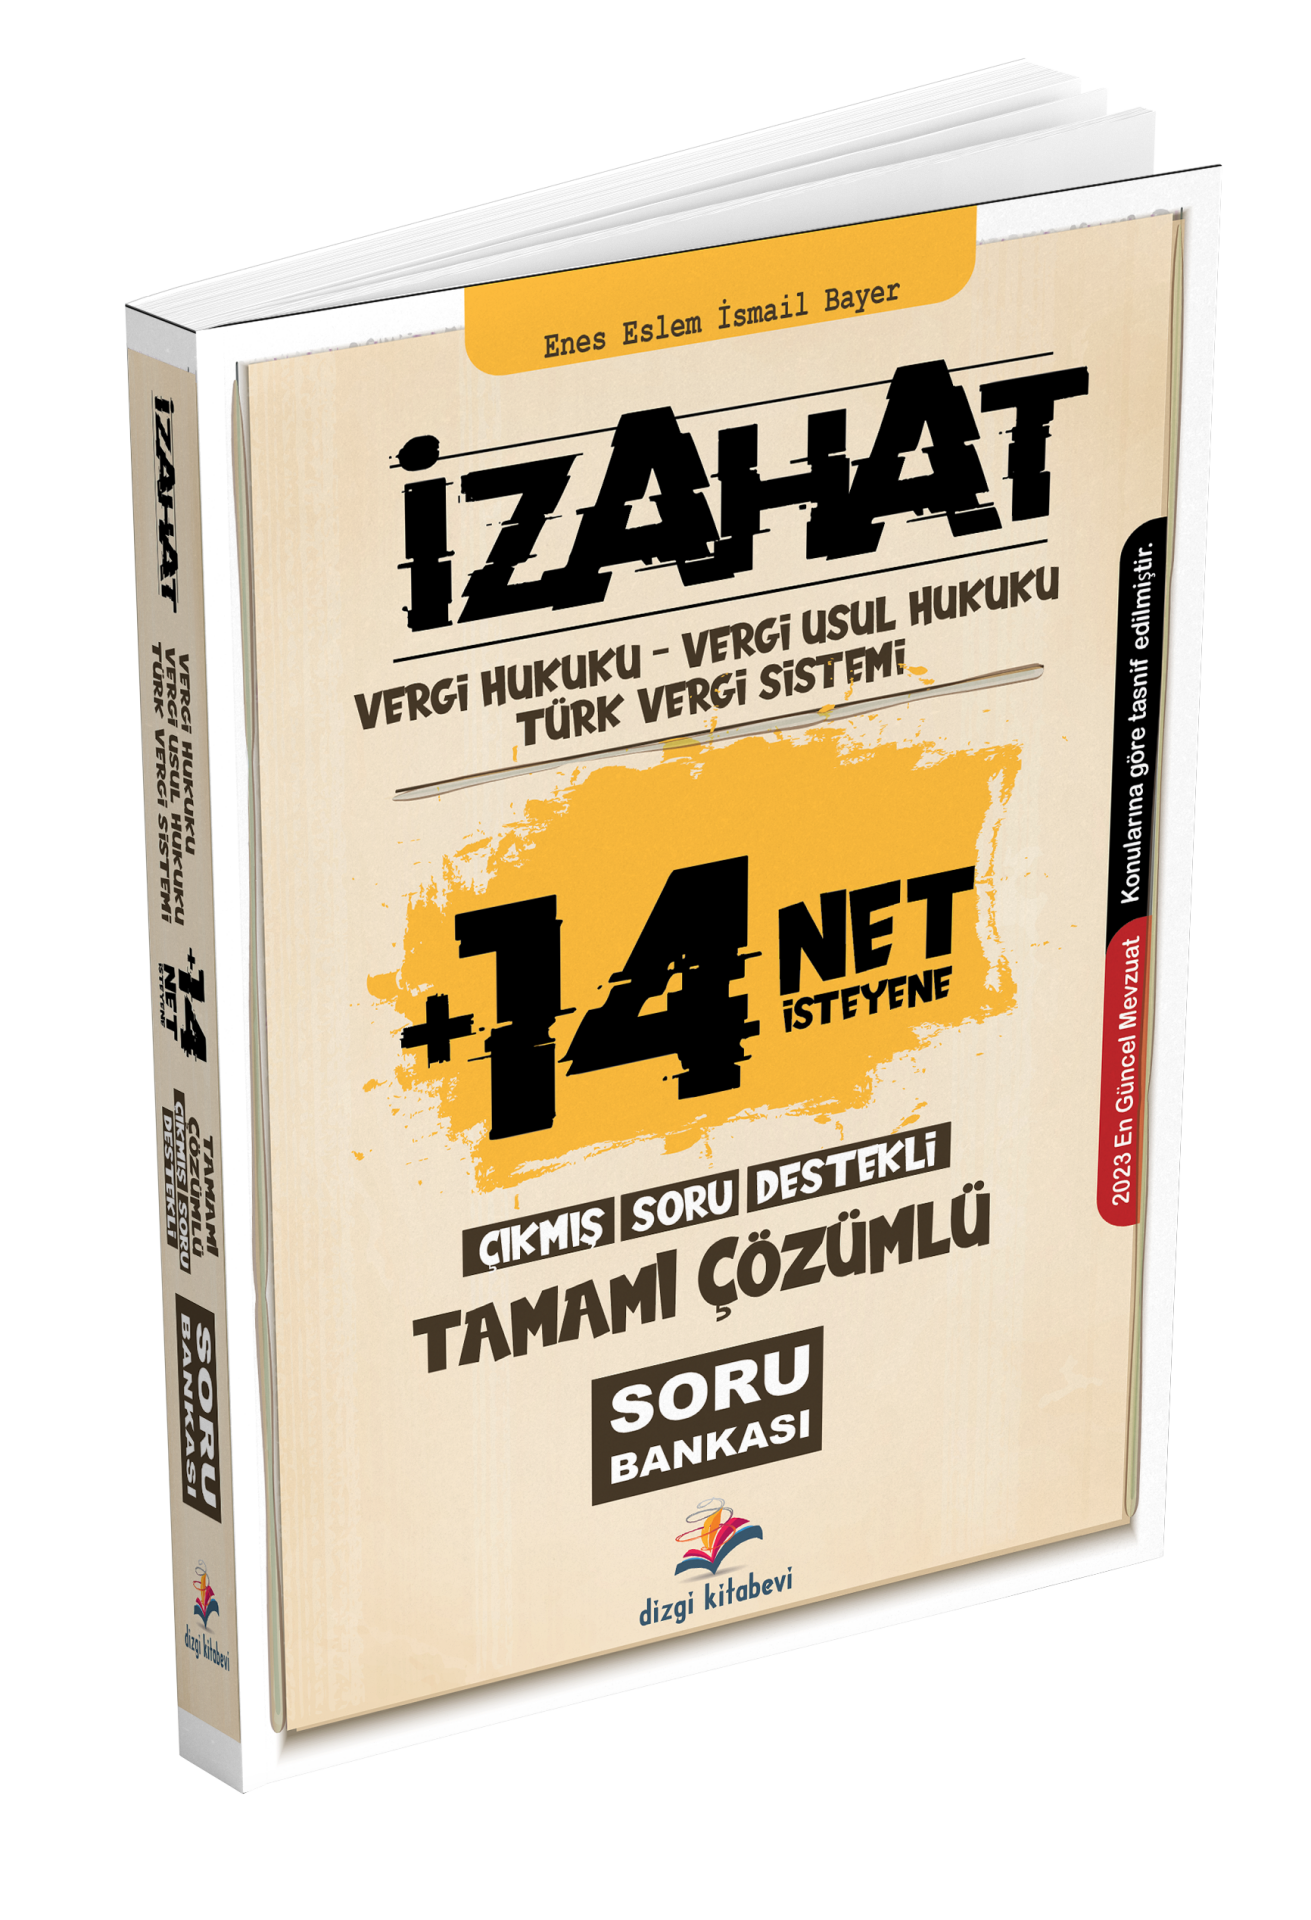 Dizgi Kitap İzahat Vergi Hukuku, Vergi Usul Hukuku, Türk Vergi Sistemi Çıkmış Soru Destekli Tamamı Çözümlü Soru Bankası 2023